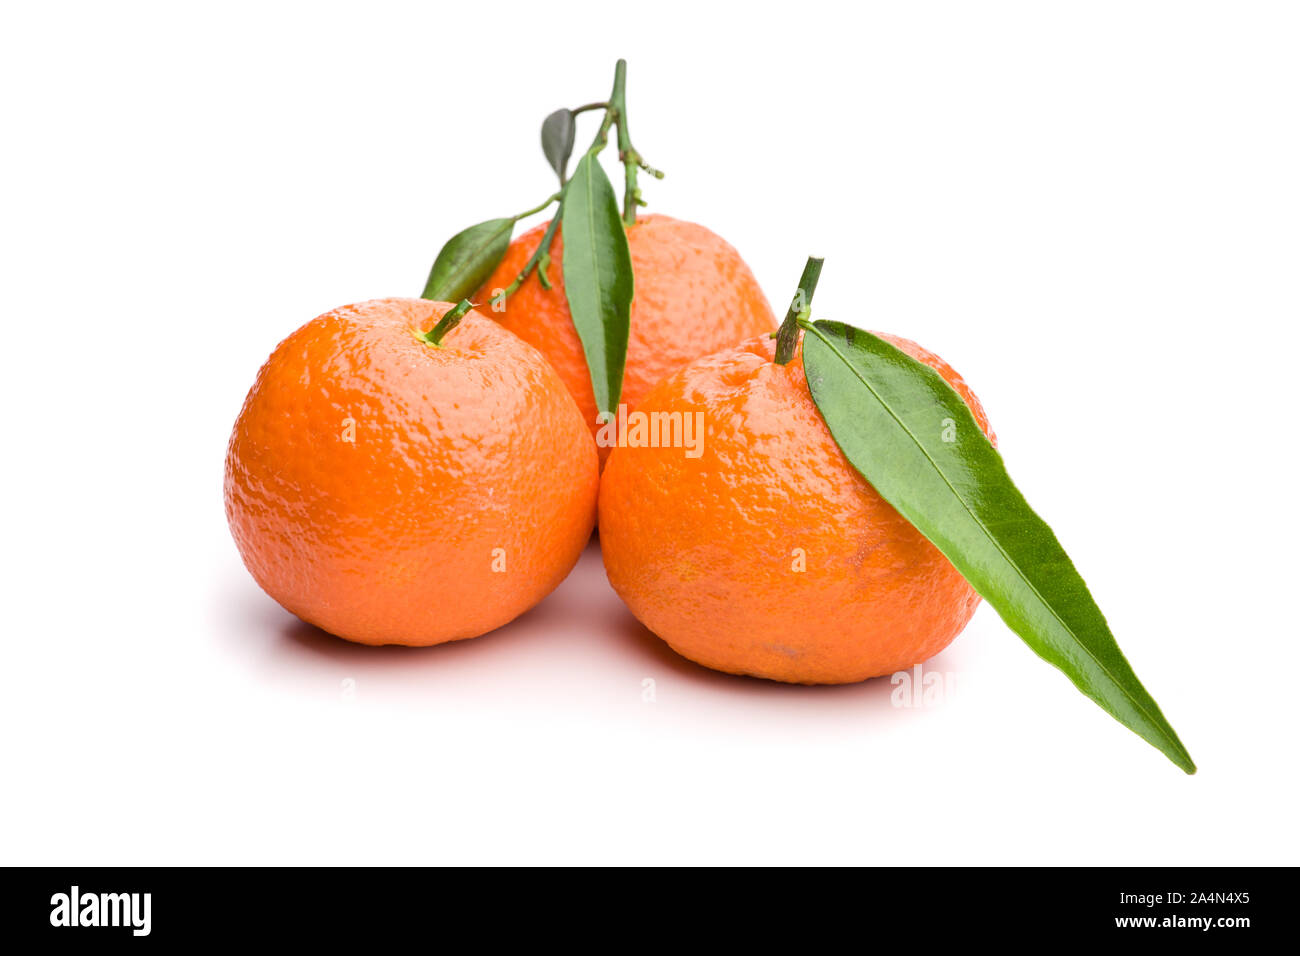 3 tangerini con roba verde Foto Stock